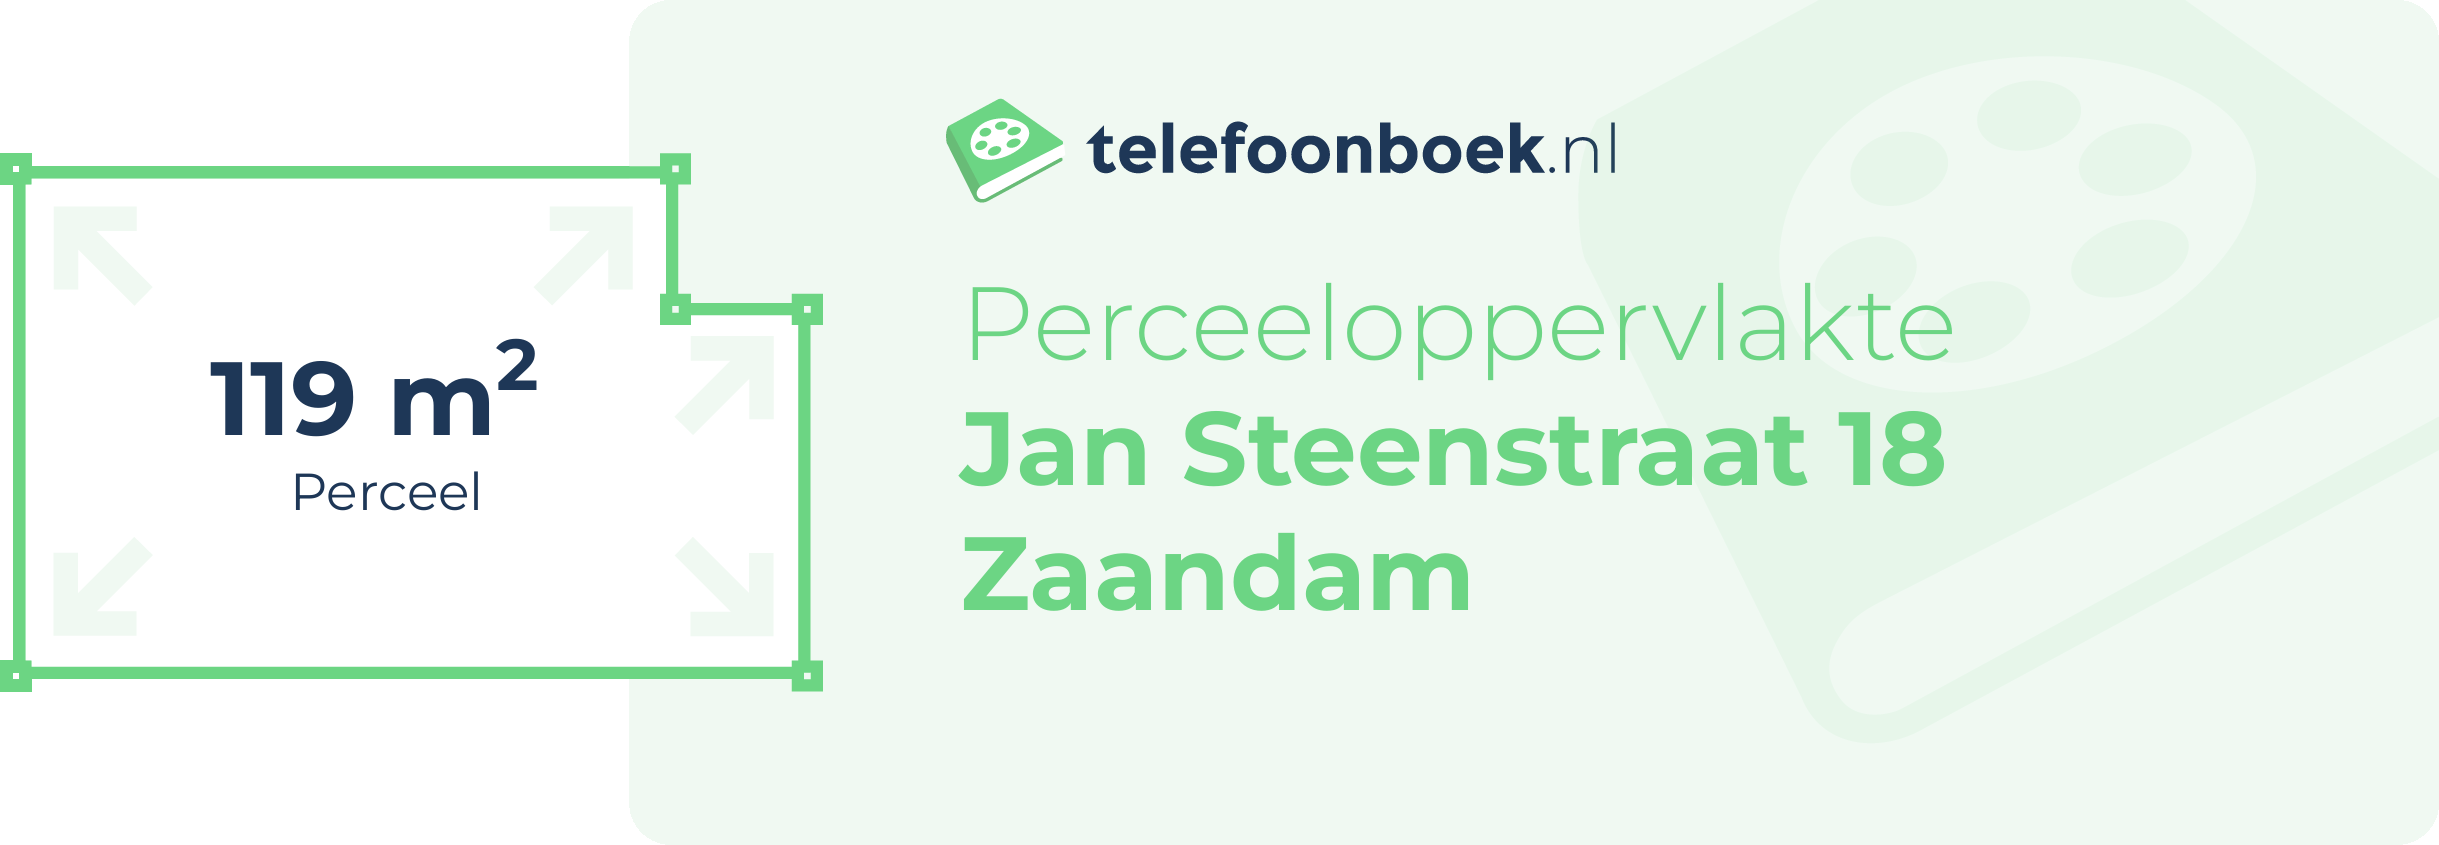 Perceeloppervlakte Jan Steenstraat 18 Zaandam